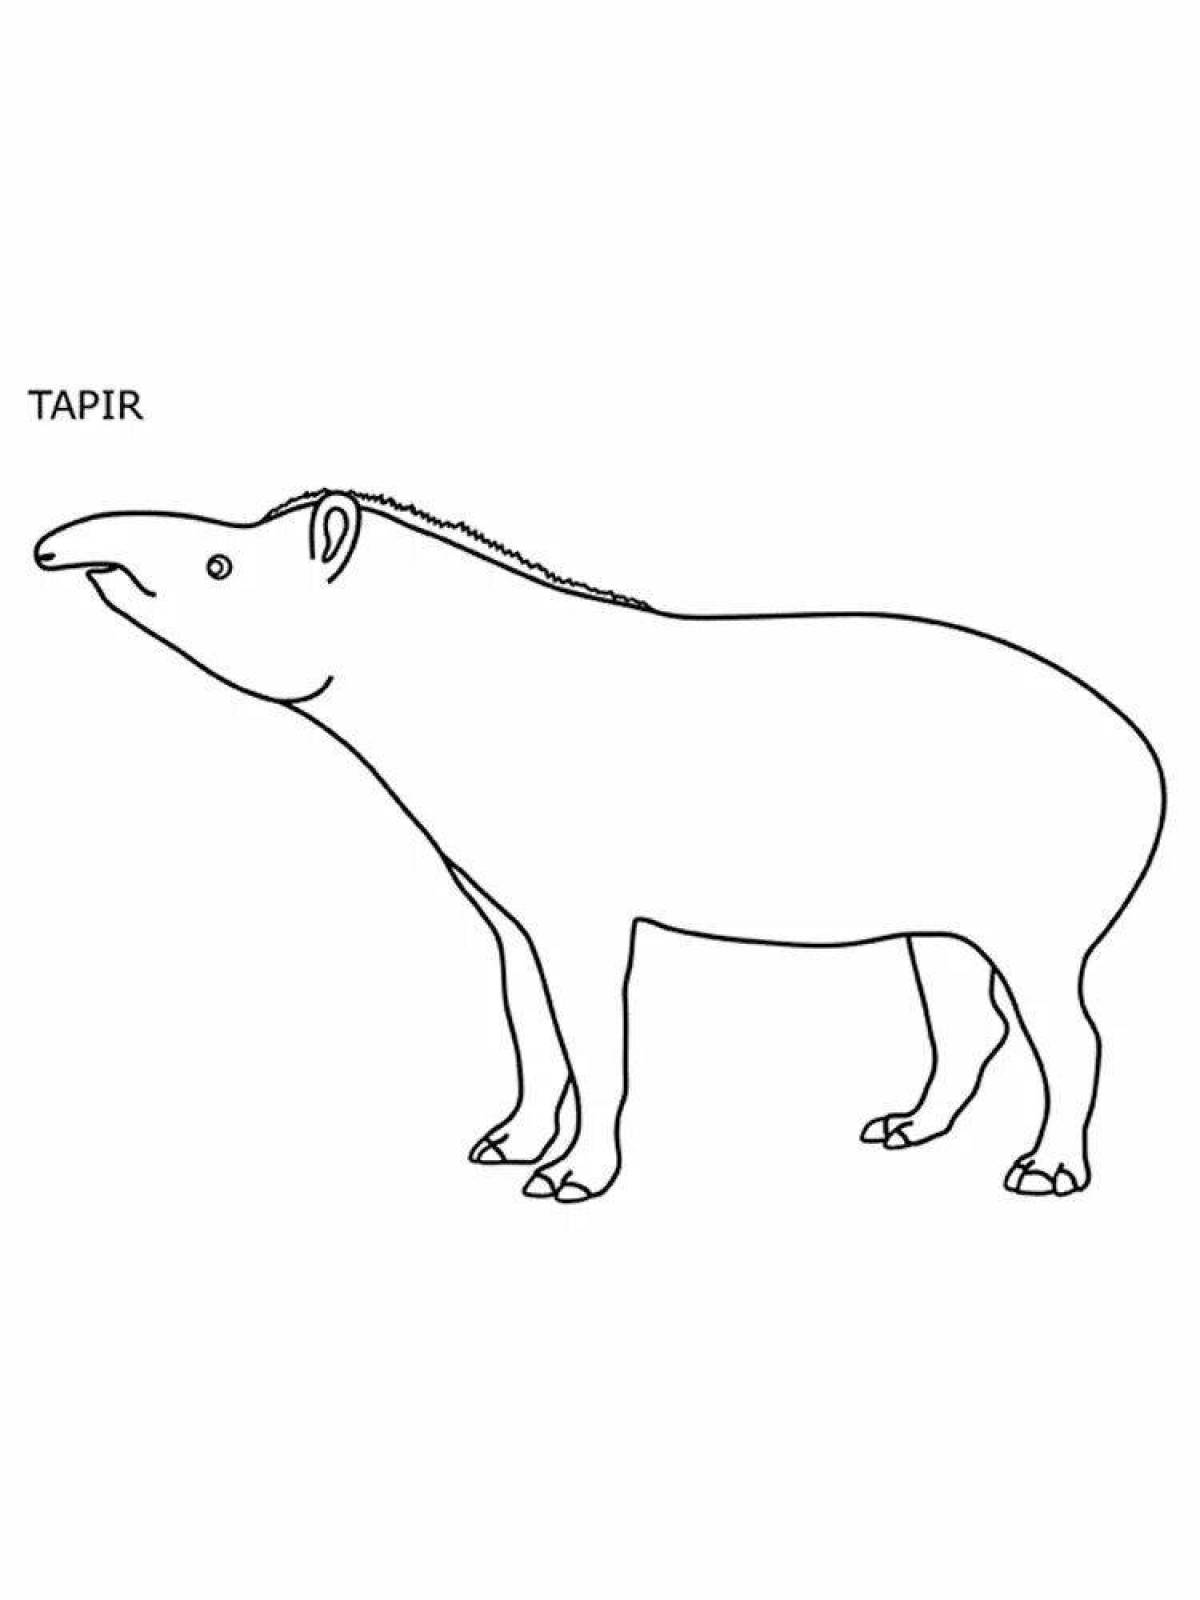 Coloring page playful tapir